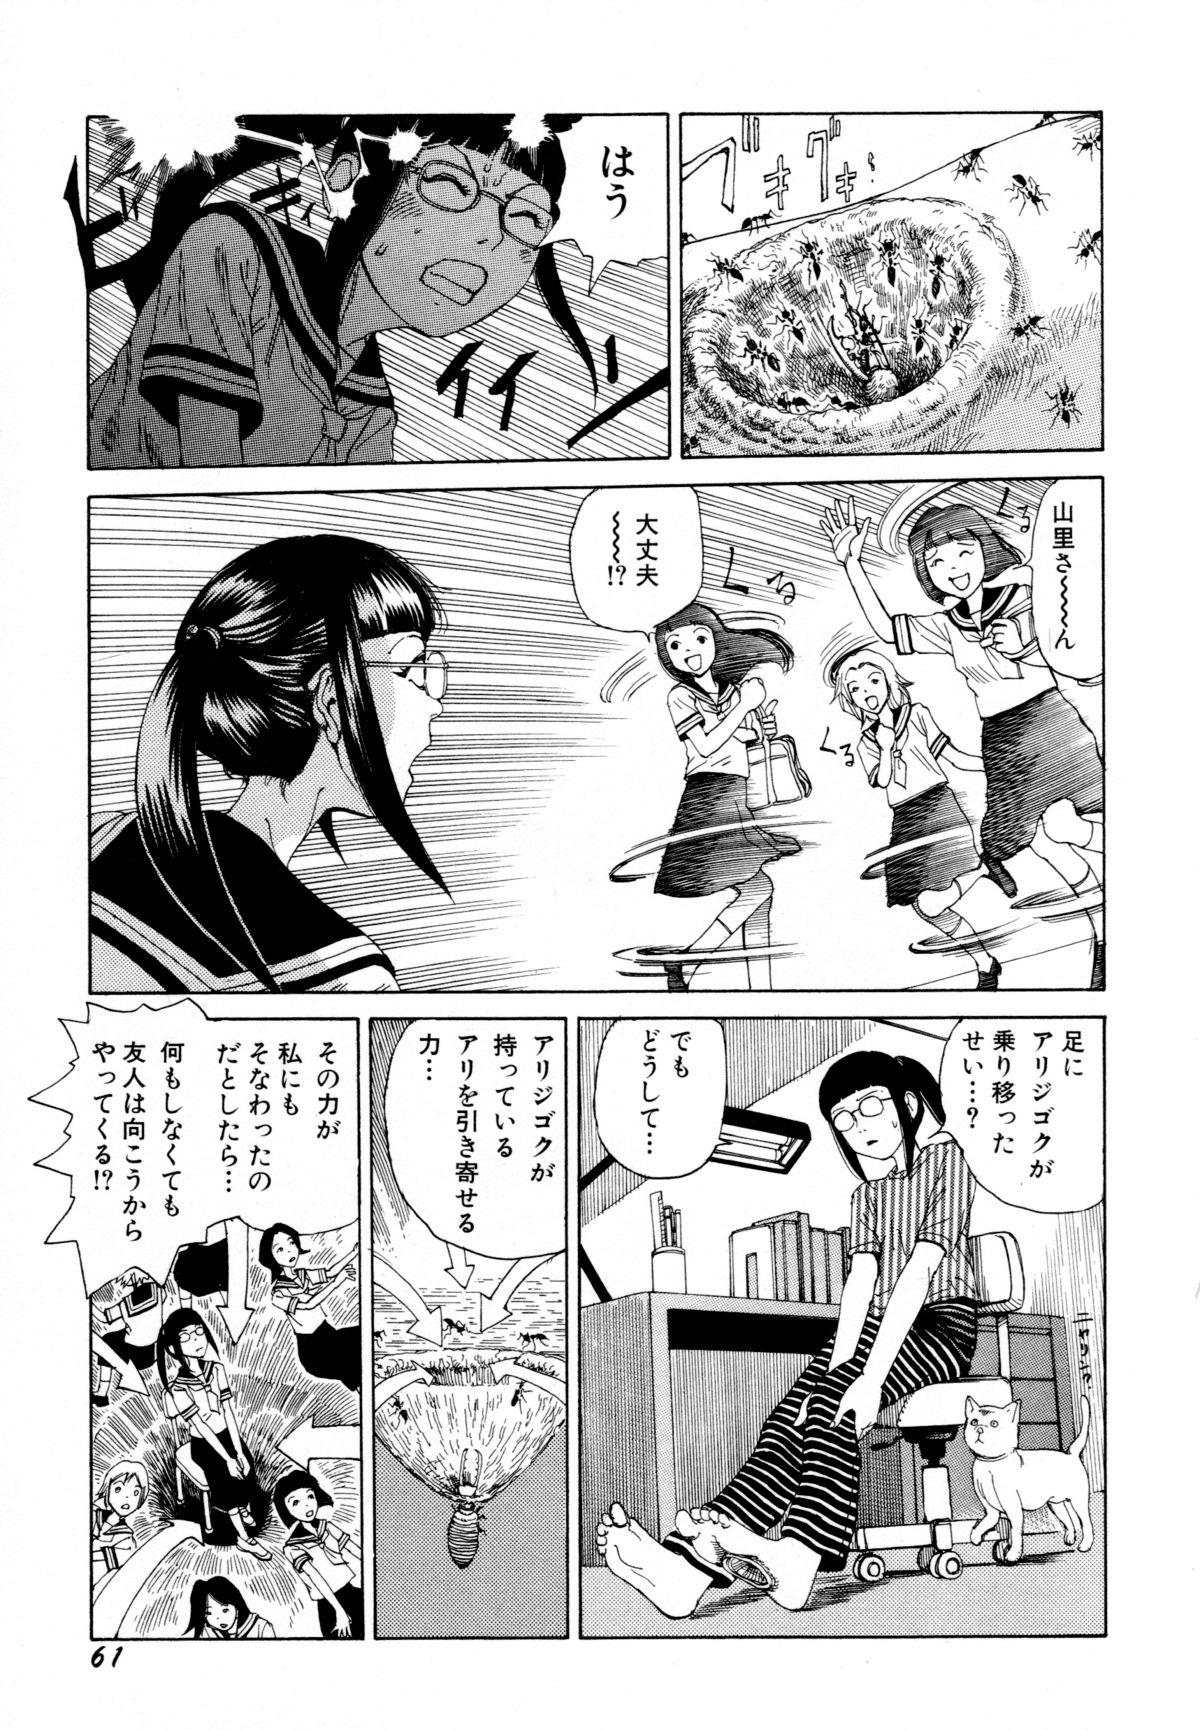 Arijigoku vs Barabara Shoujo - Antlion vs BaraBara Girl 62